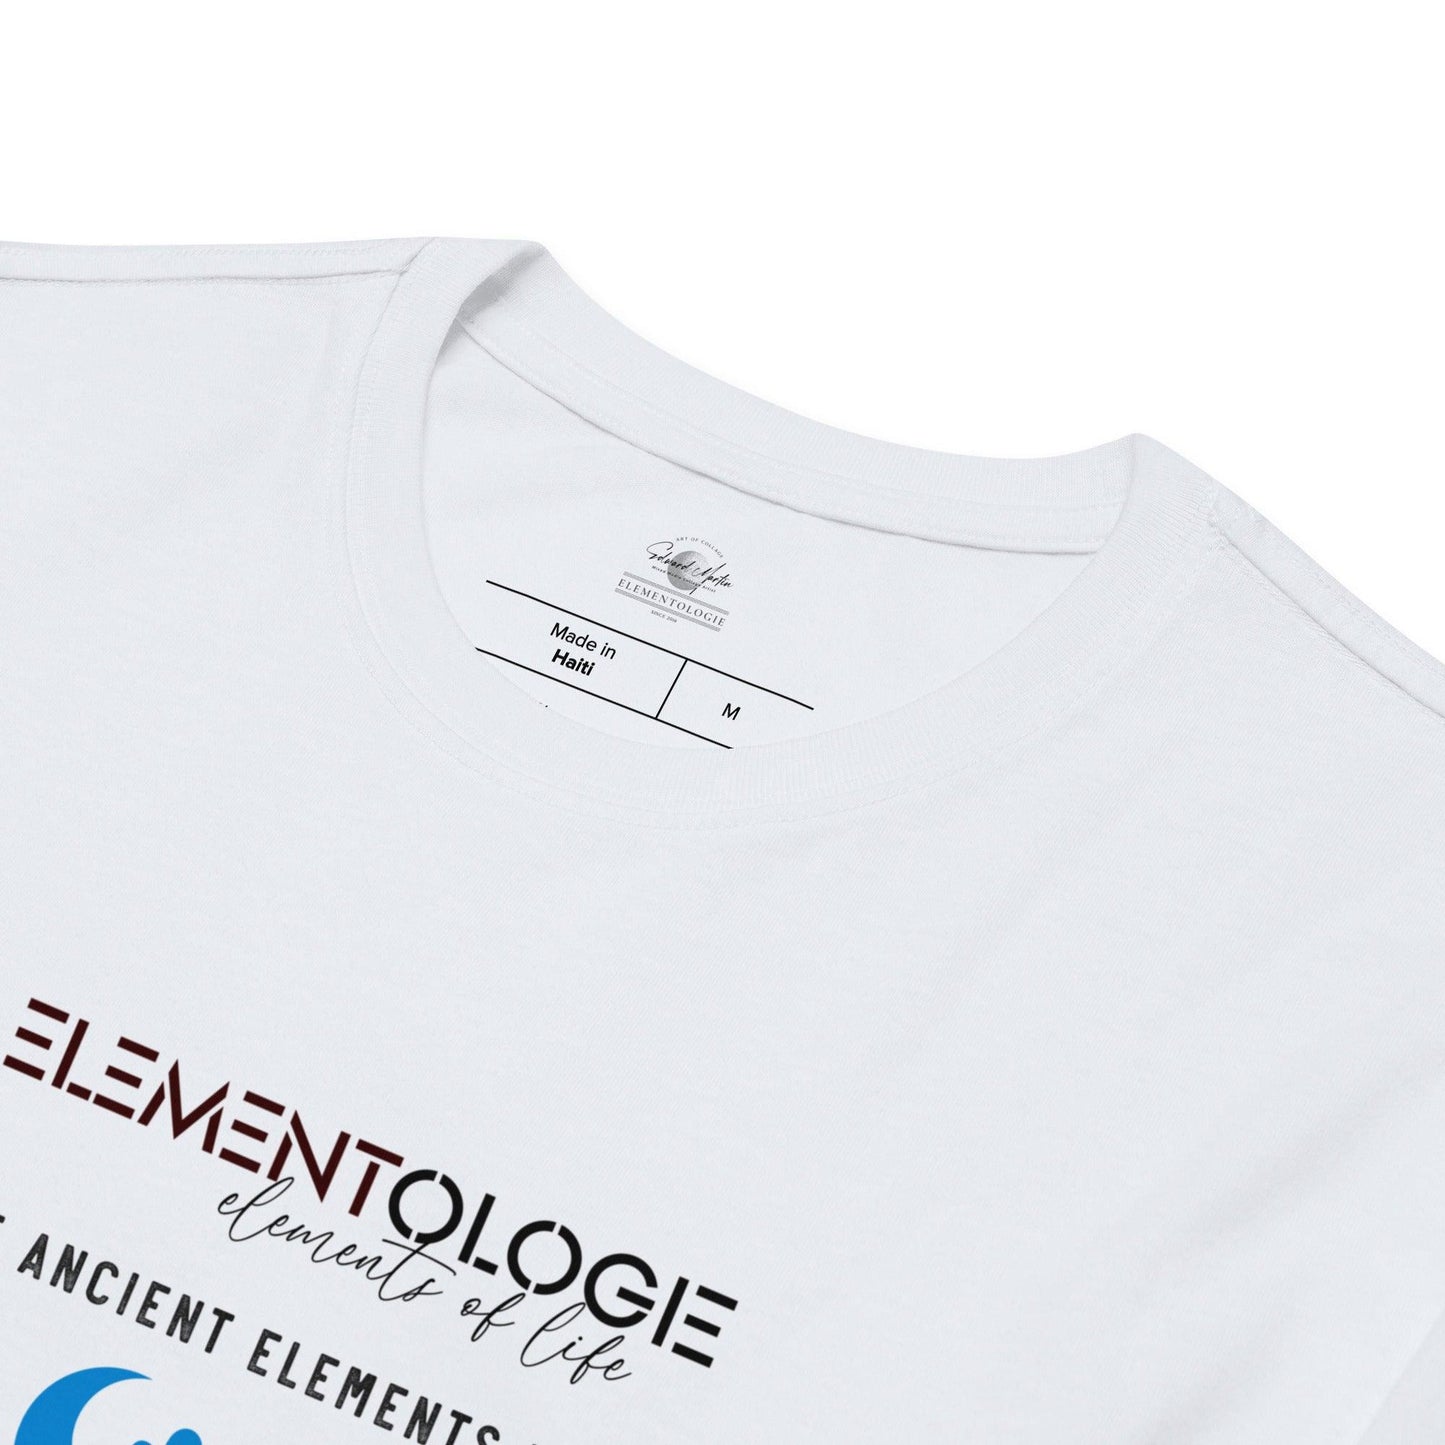 Unisex Fashion Long Sleeve Shirt-Ancient Elements - Elementologie